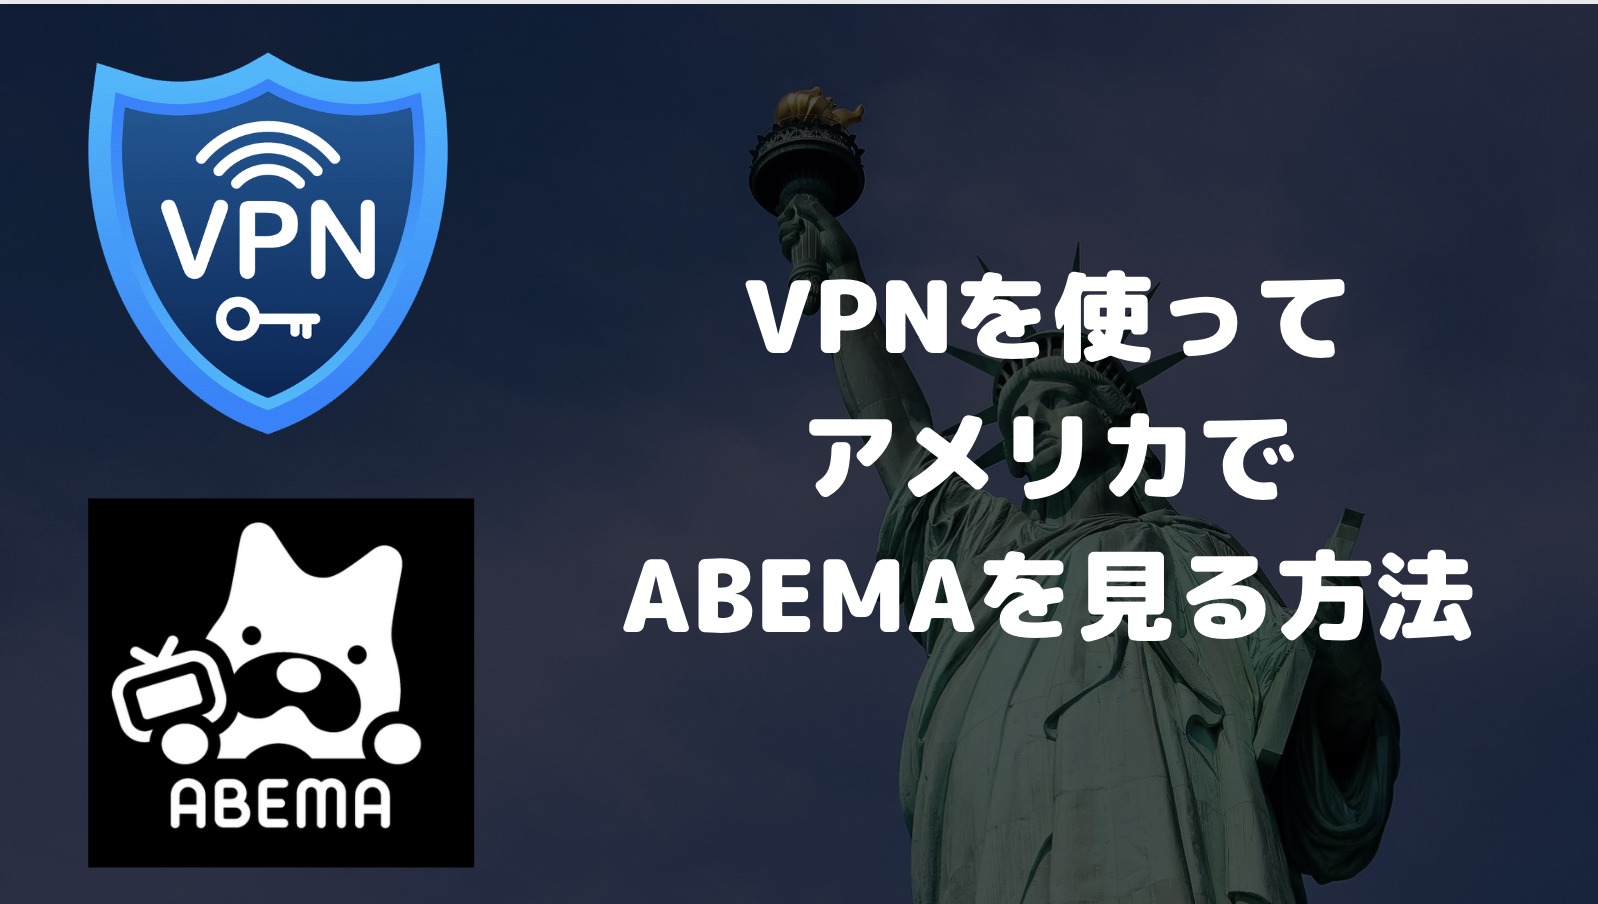 ABEMAをアメリカで見るには？VPNを使った視聴方法を解説